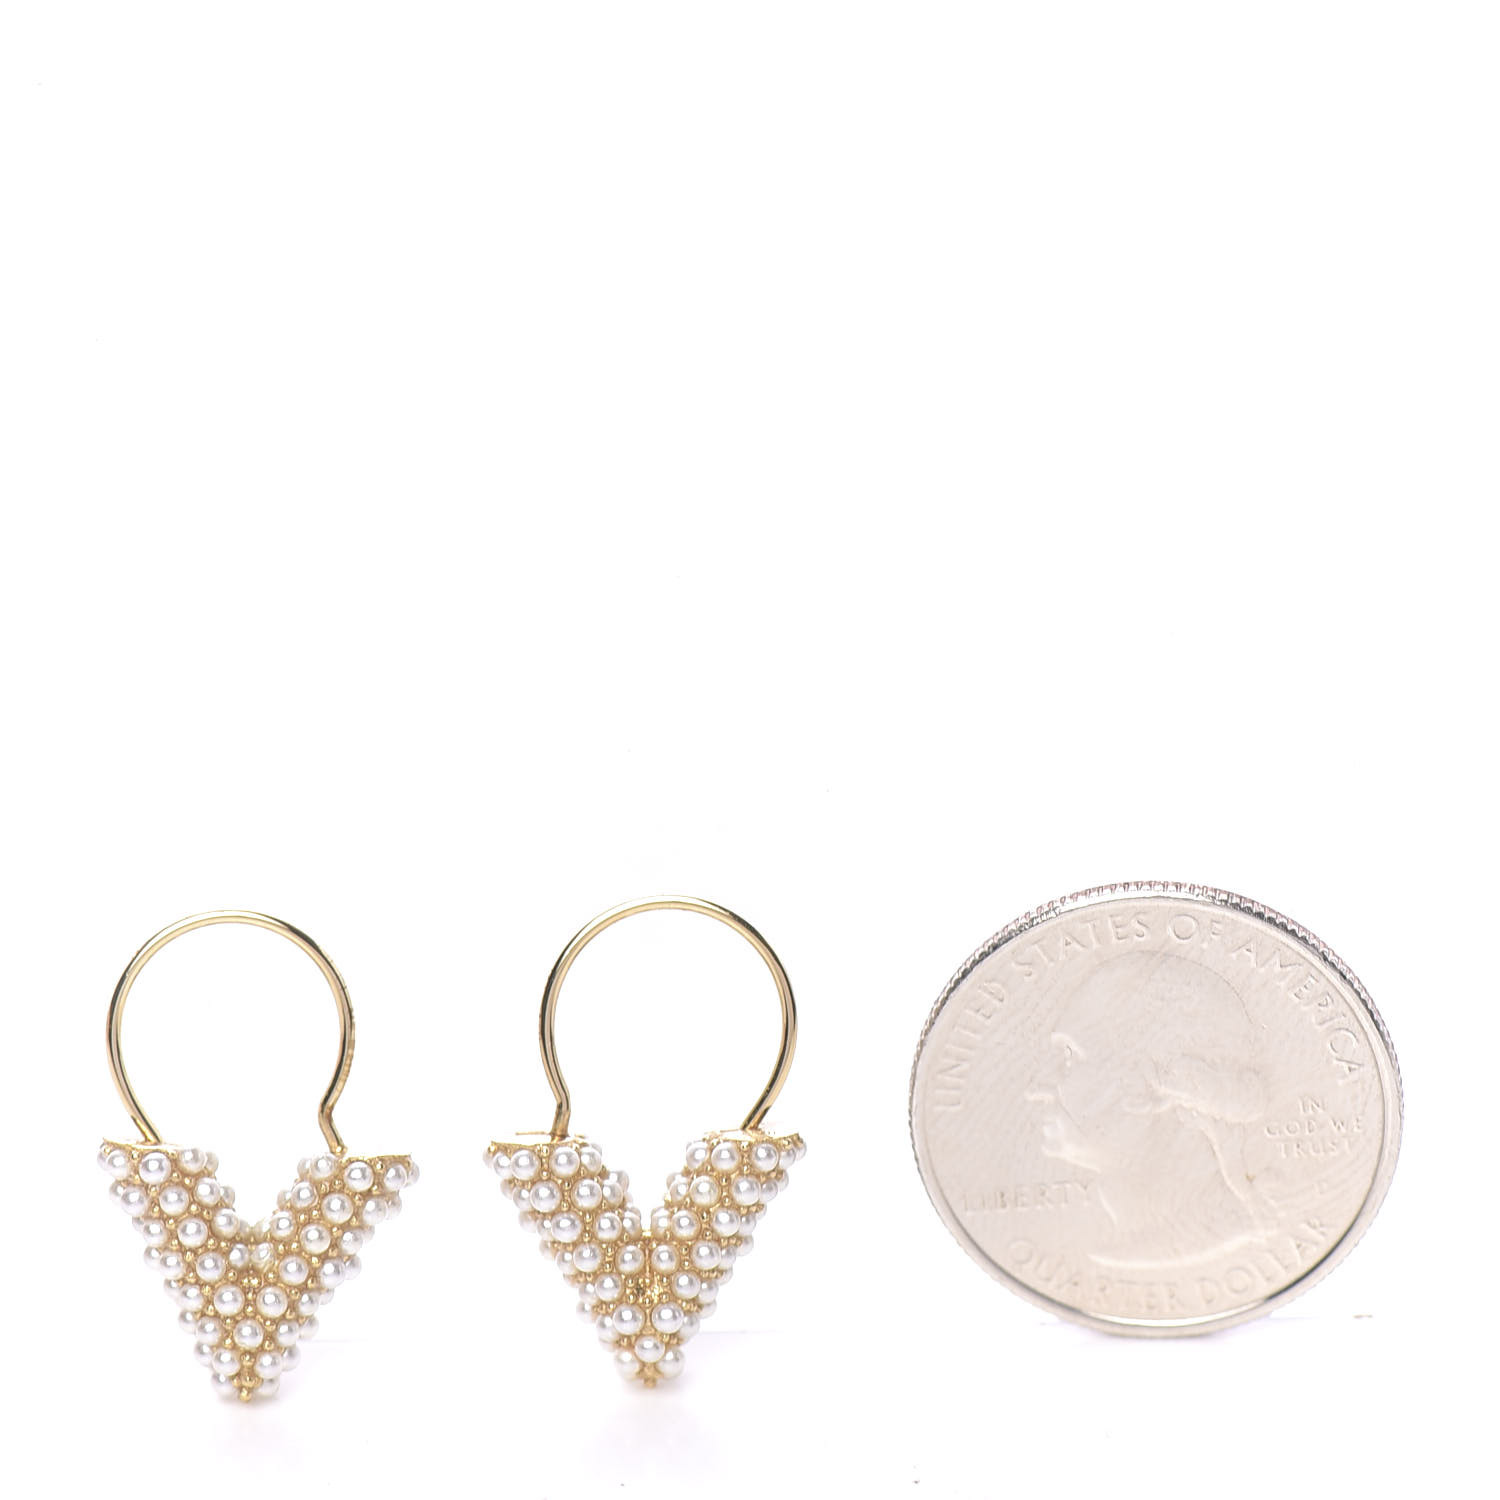 Louis Vuitton Louisette Stud Earrings - Gold-Tone Metal Stud, Earrings -  LOU448782